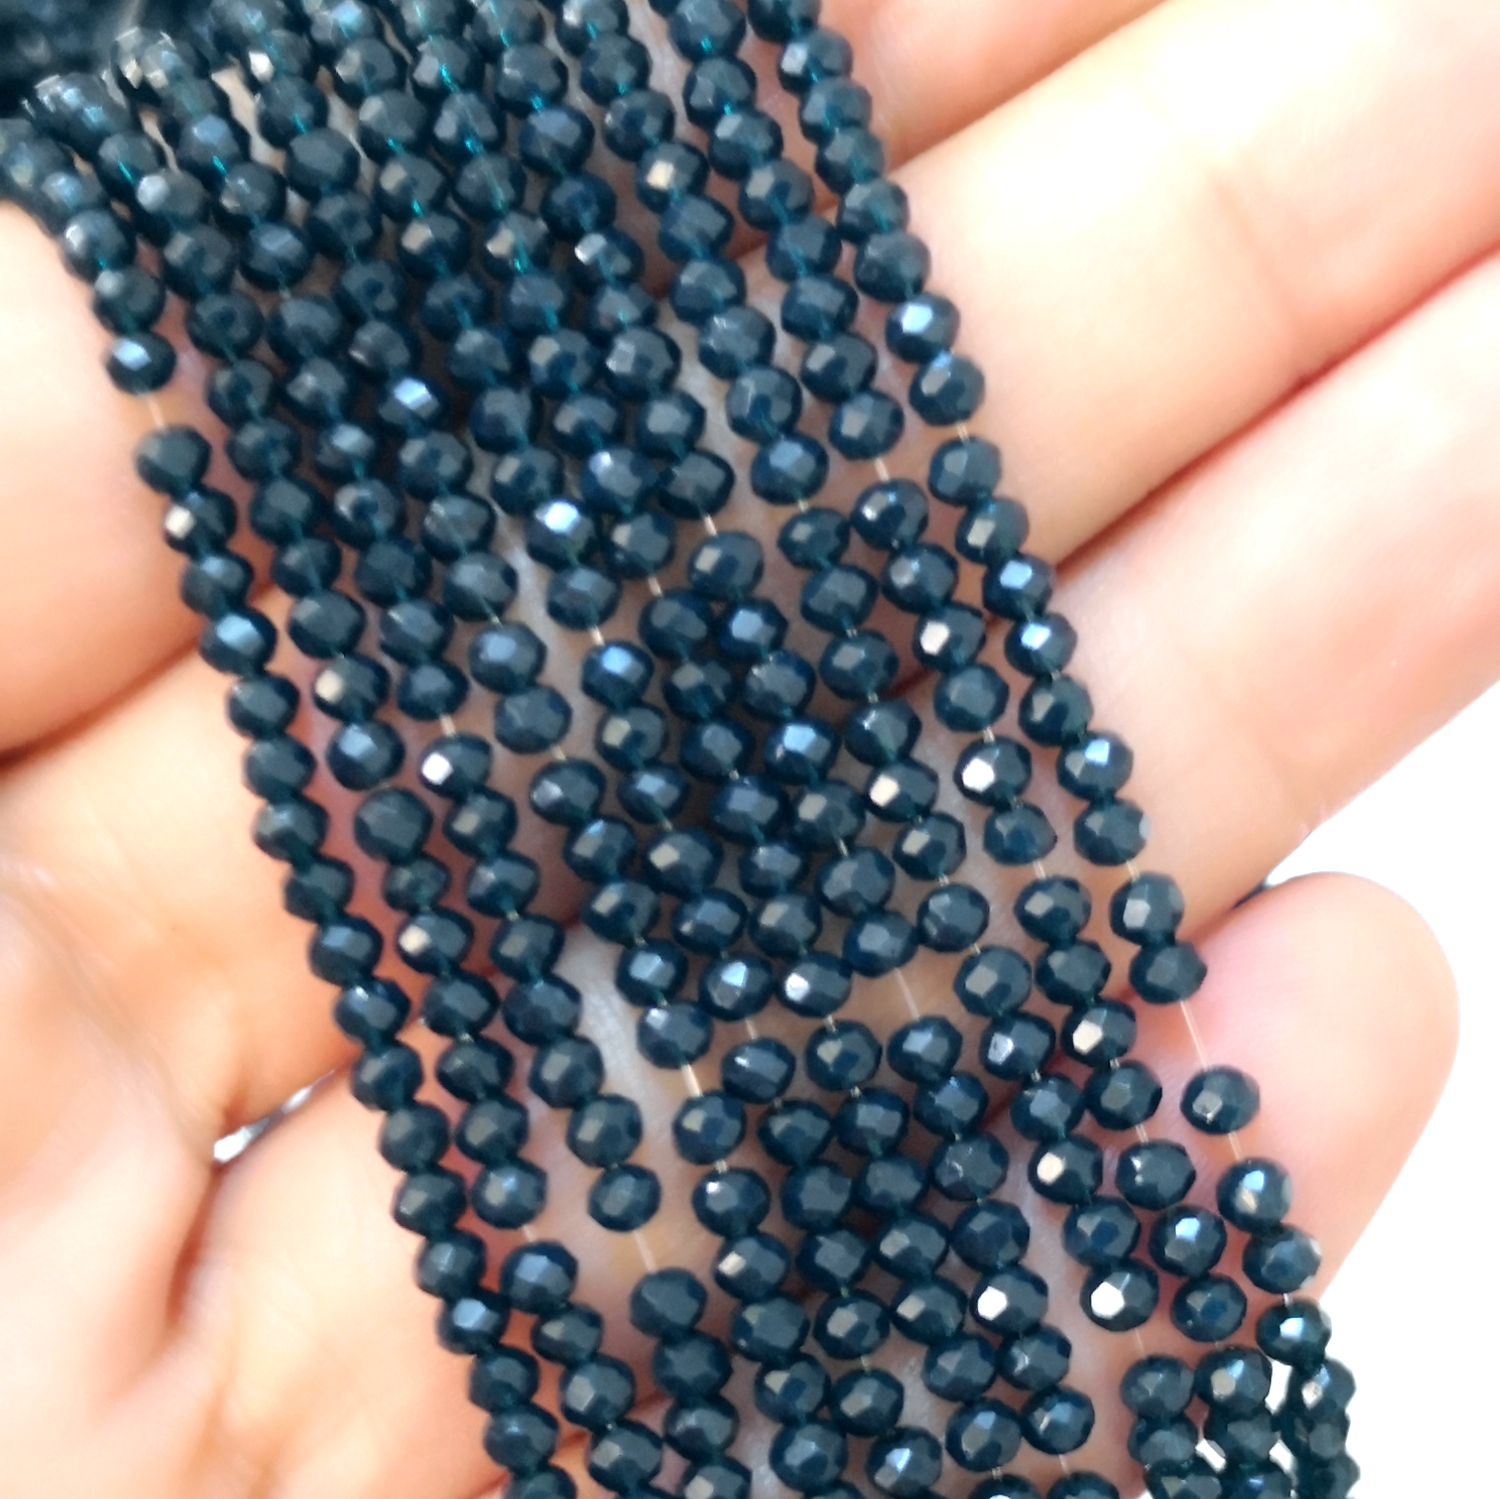 Rose Quartz 2mm Beads - Gemstone